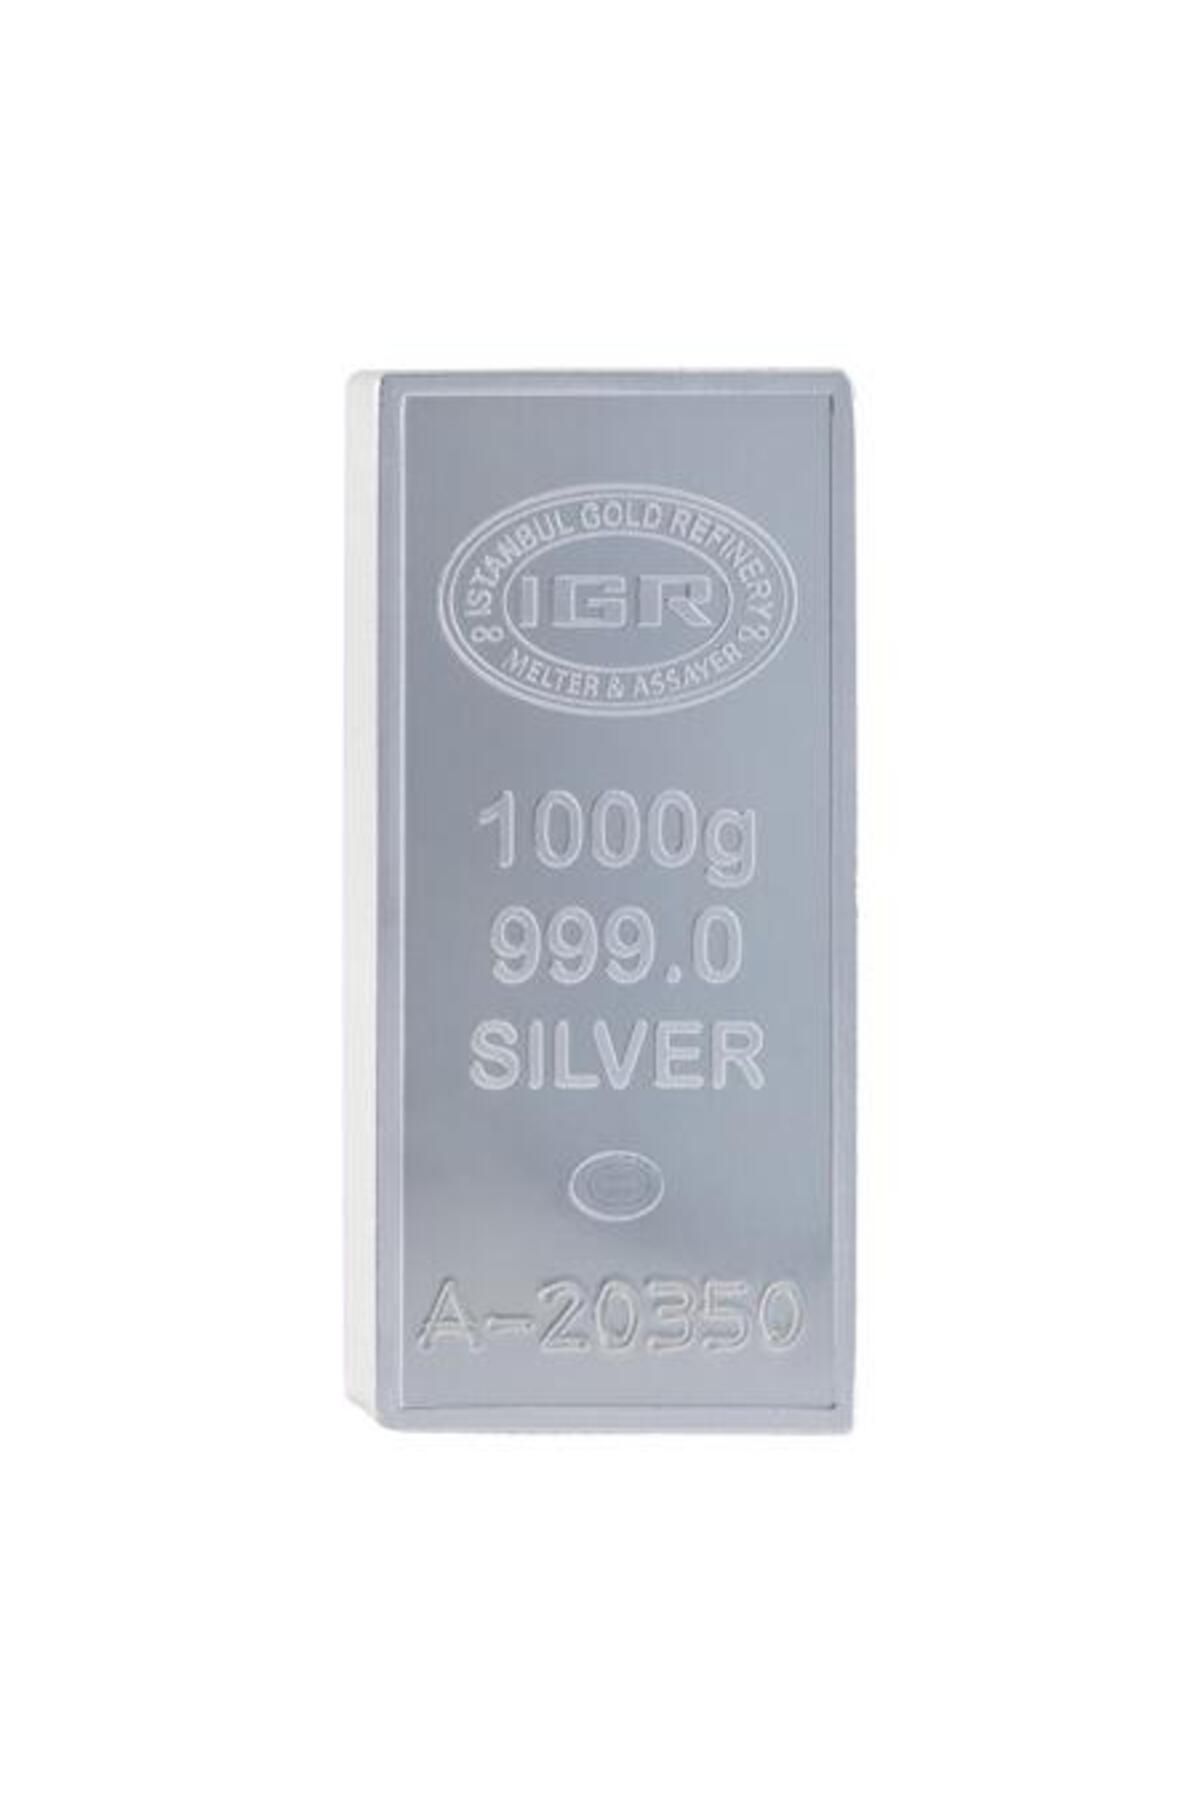 İar Agakulche Iar 1000 gram / 1 Kilo Külçe Gümüş 999.0 Saflıkta